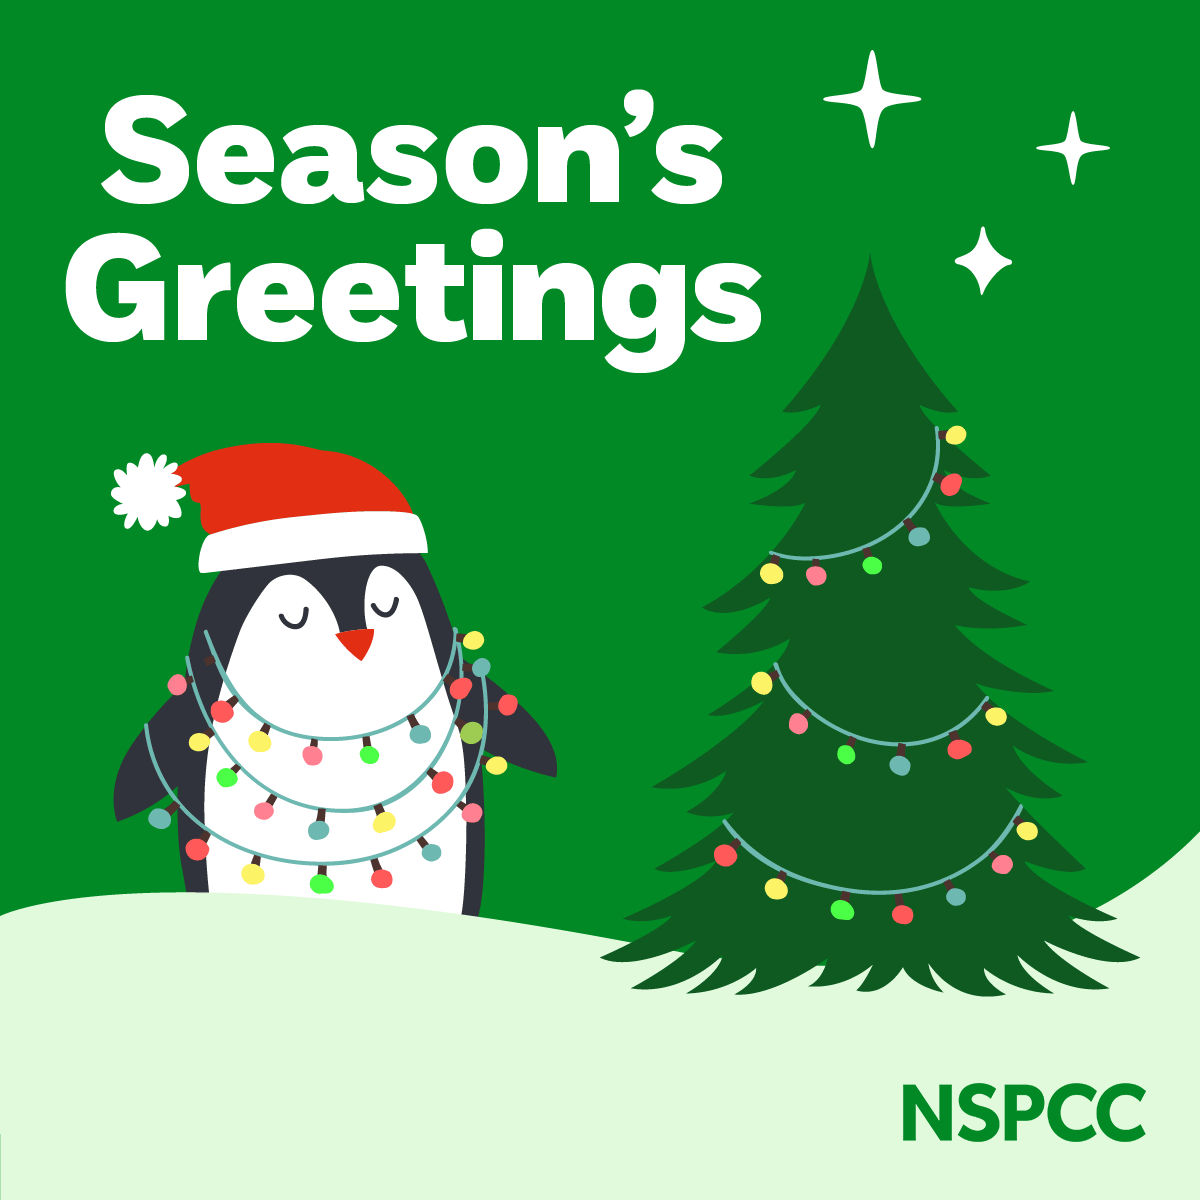 NSPCC Season's Greetings